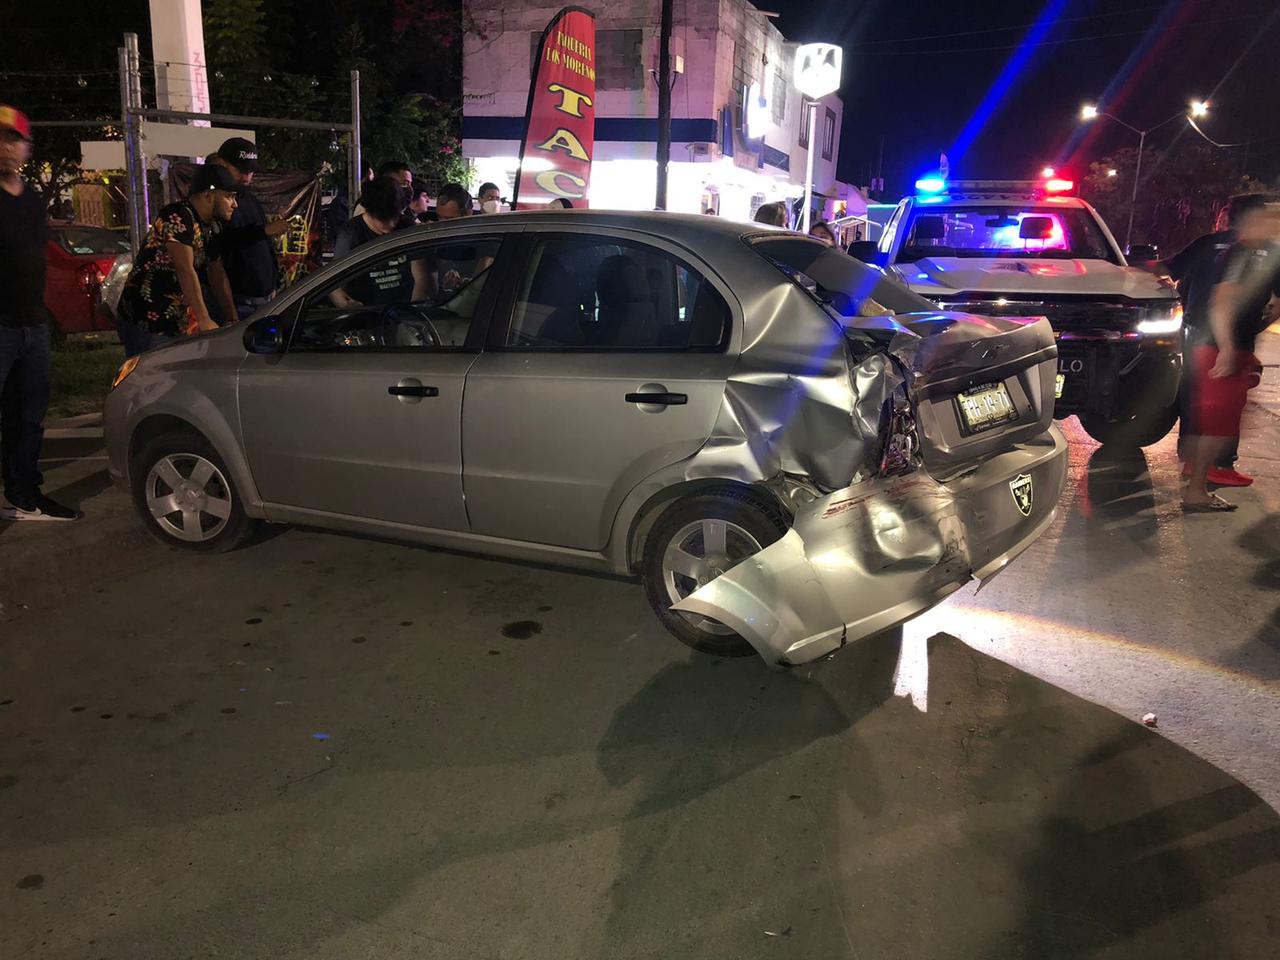 Fue la noche el sábado en el bulevar El Minero, entre las calles de Fuelle y Martillo, cuando el conductor conducía a exceso de velocidad una camioneta Dodge RAMcolor guinda, se impactó por alcance contra un Chevrolet Aveo color gris.

